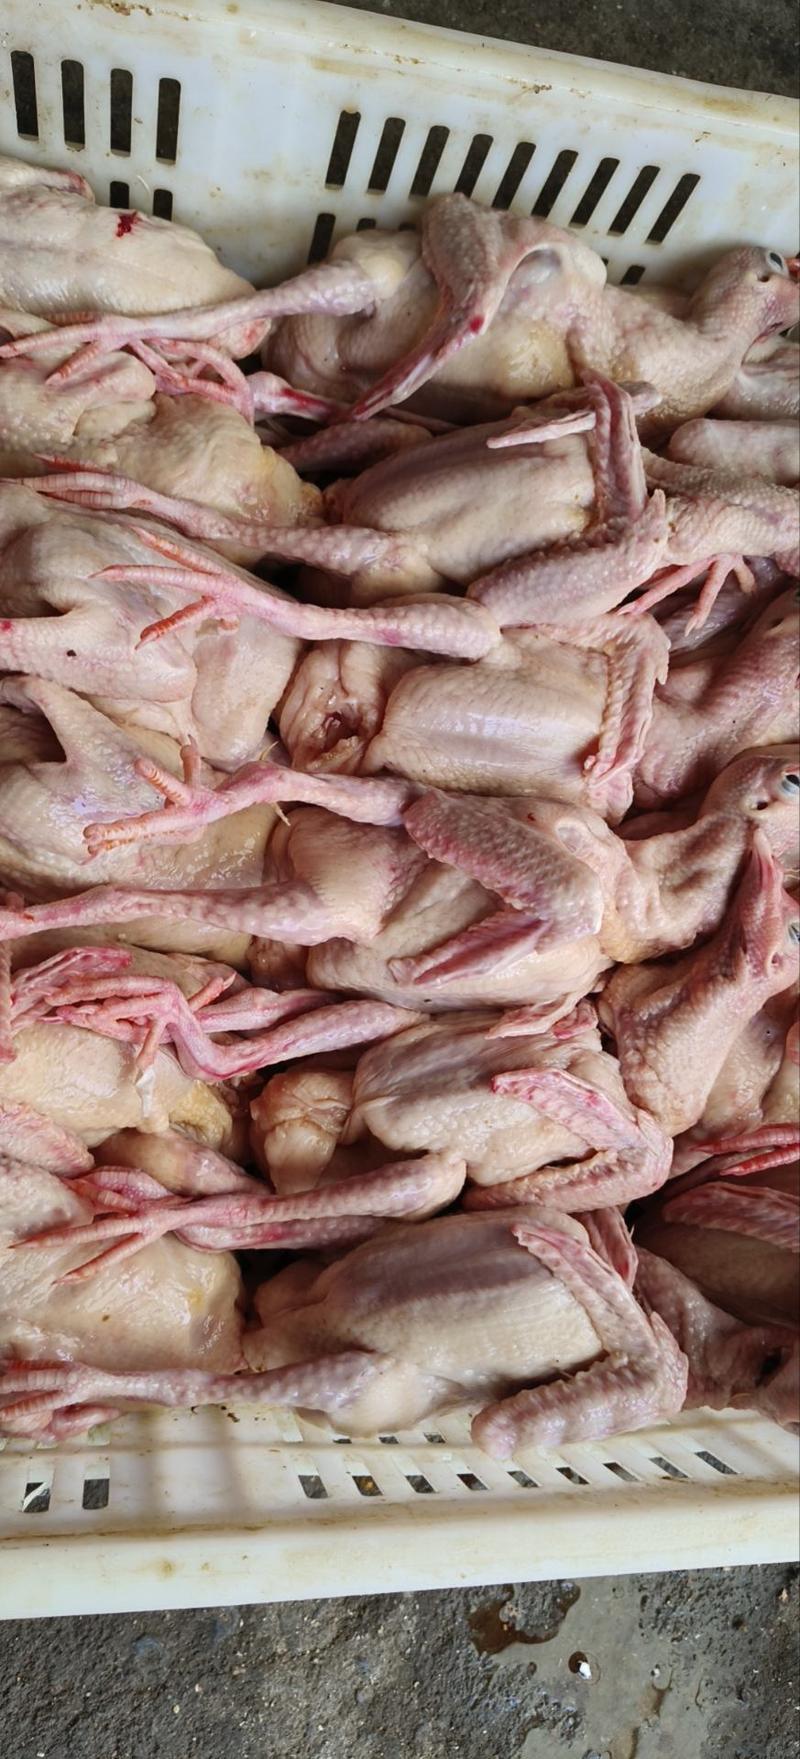 乳鸽白条鸽老鸽子鸽肉工厂发货保证质量常年供应